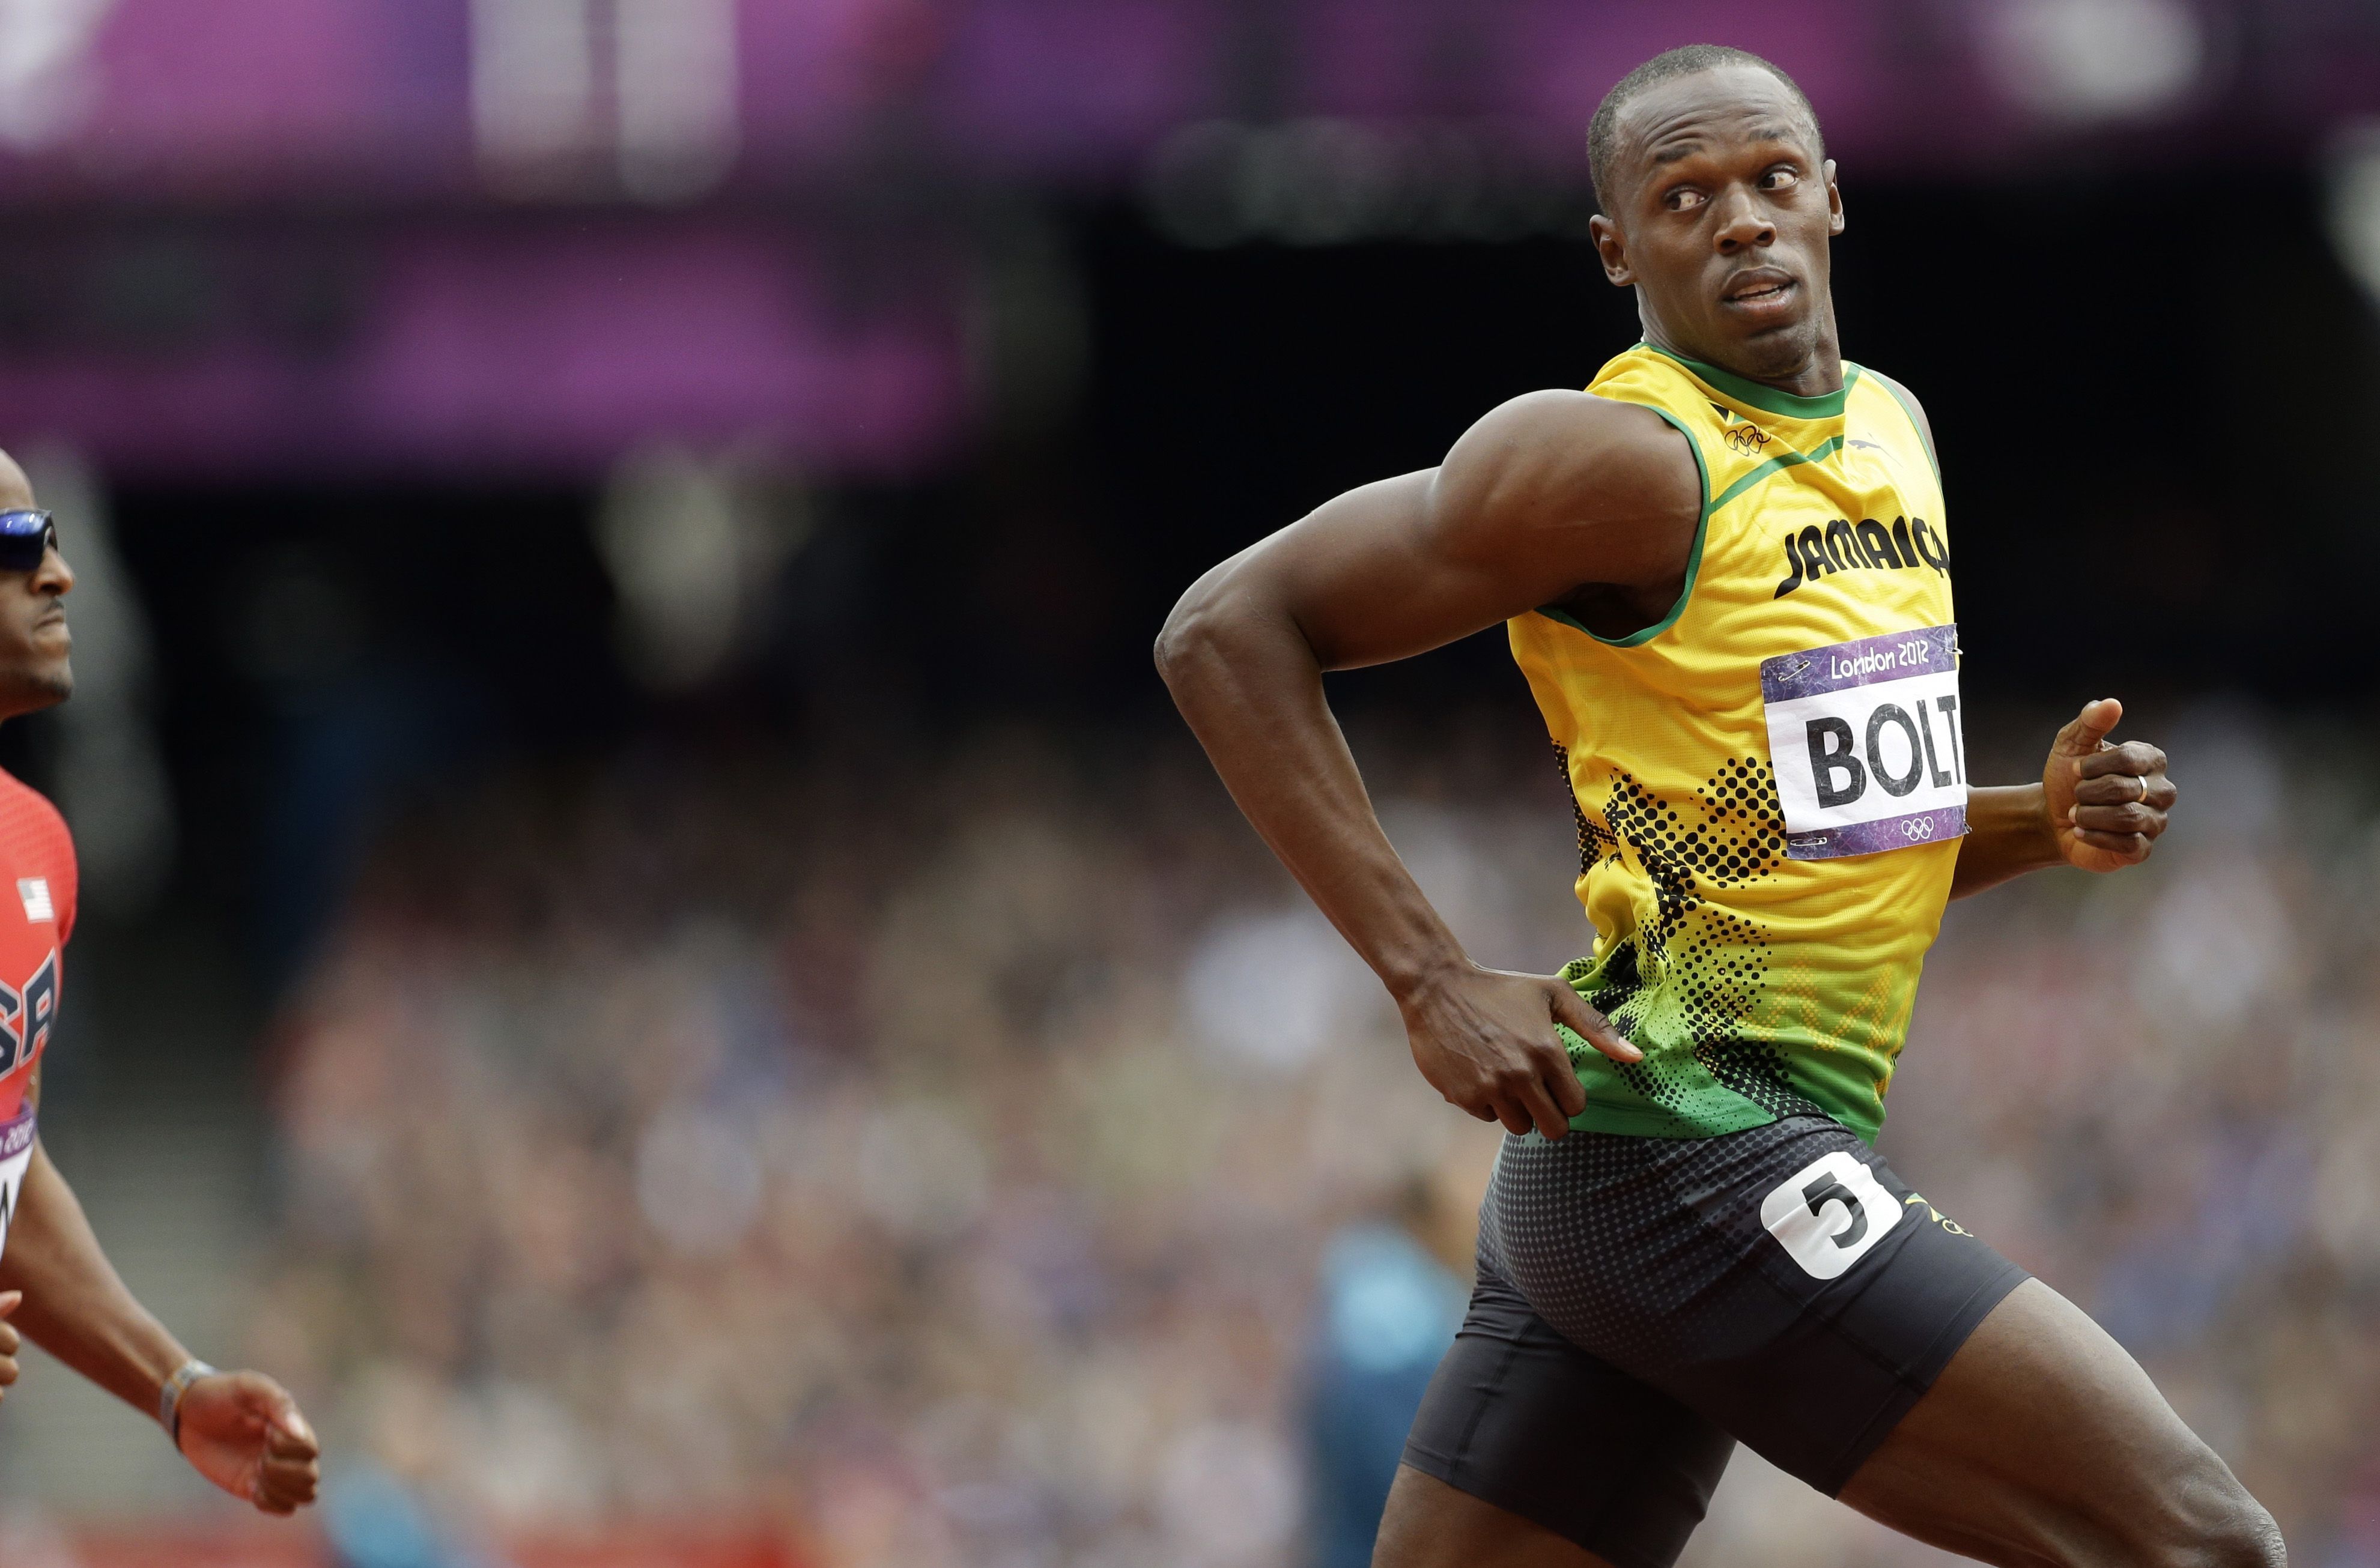 Usain Bolt HD Wallpaper. Background. Usain bolt, Usain bolt picture, Usain bolt facts